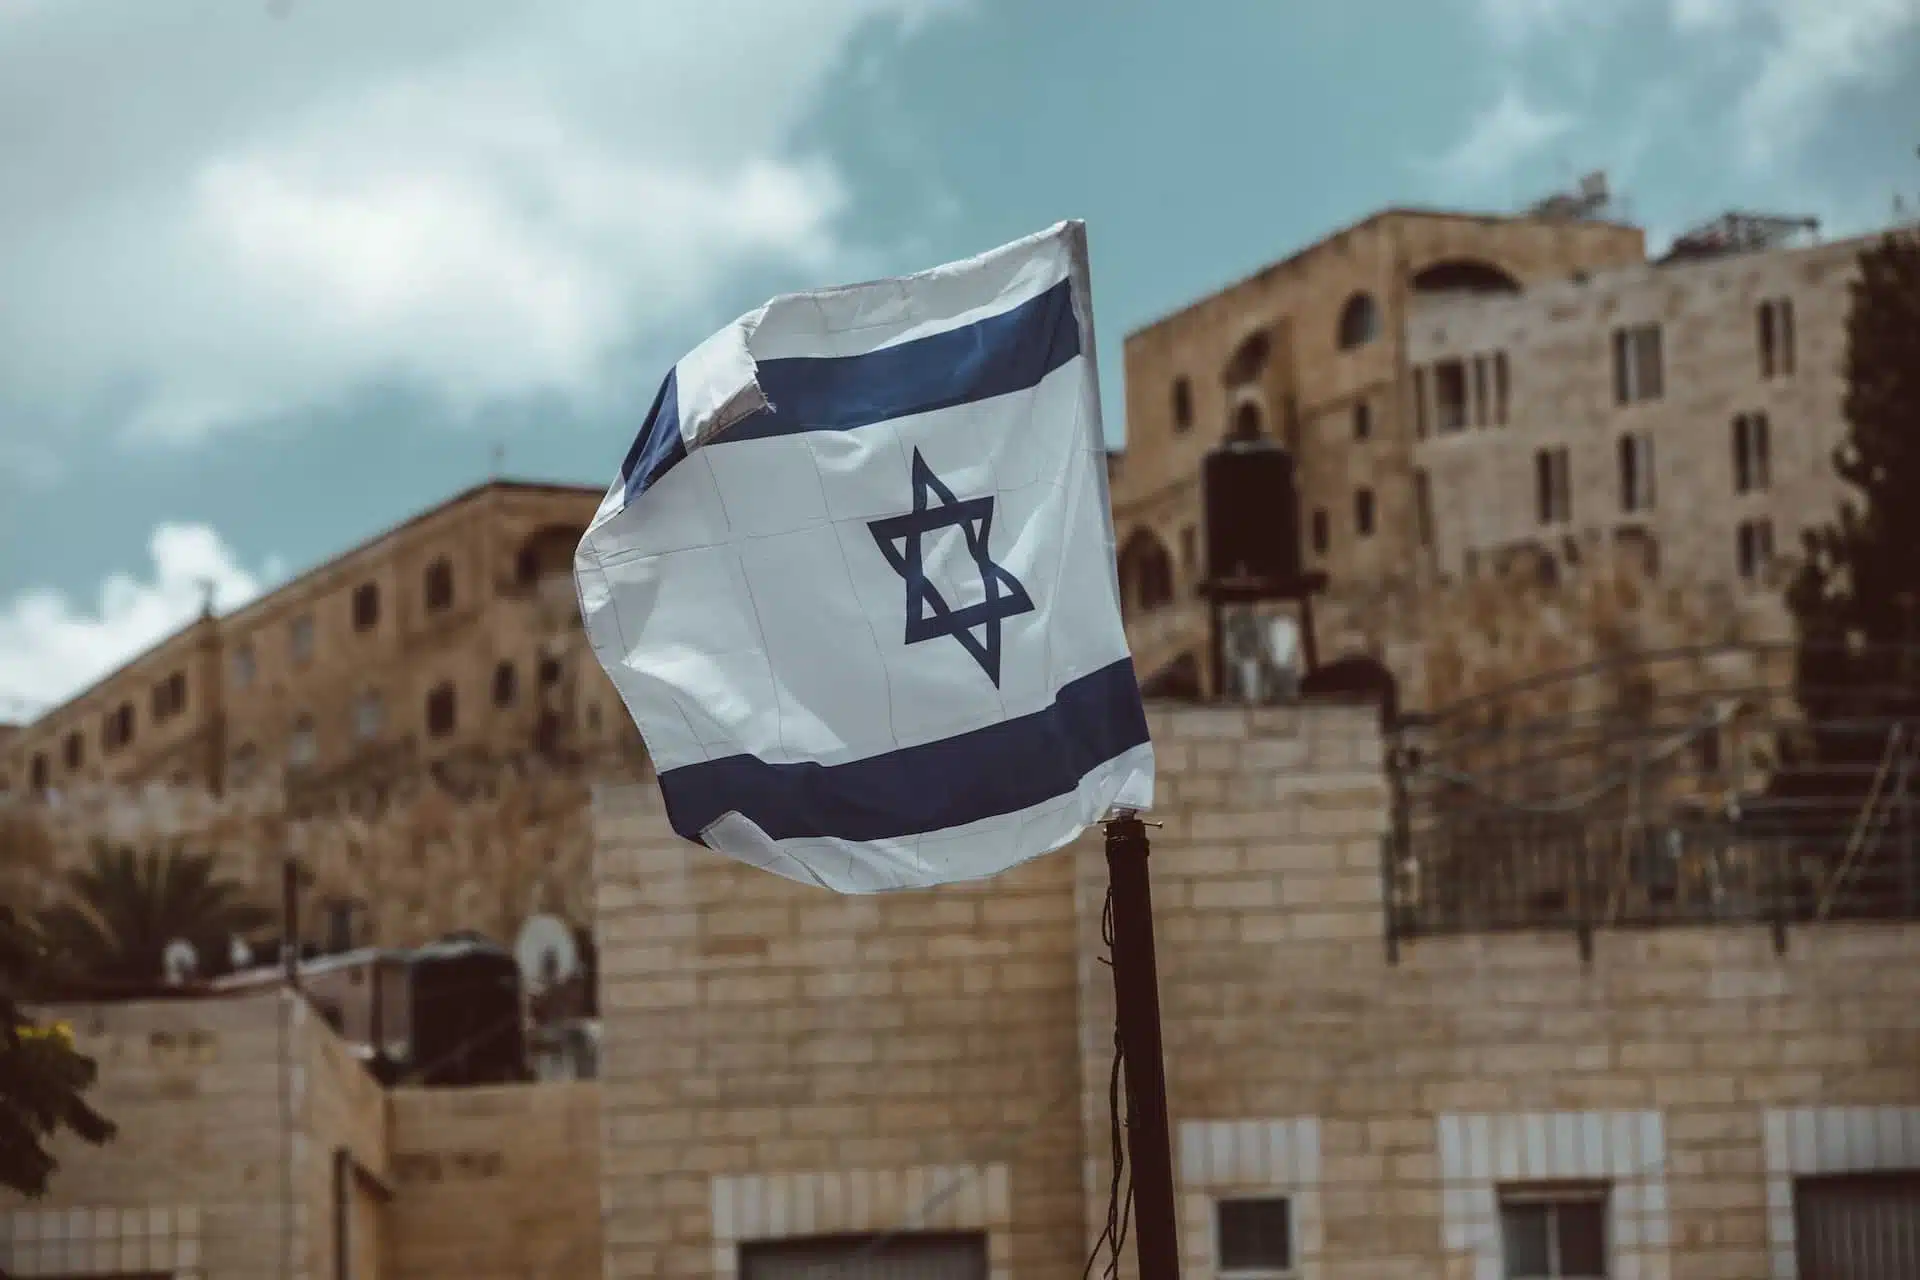 Флаг Израиля фото